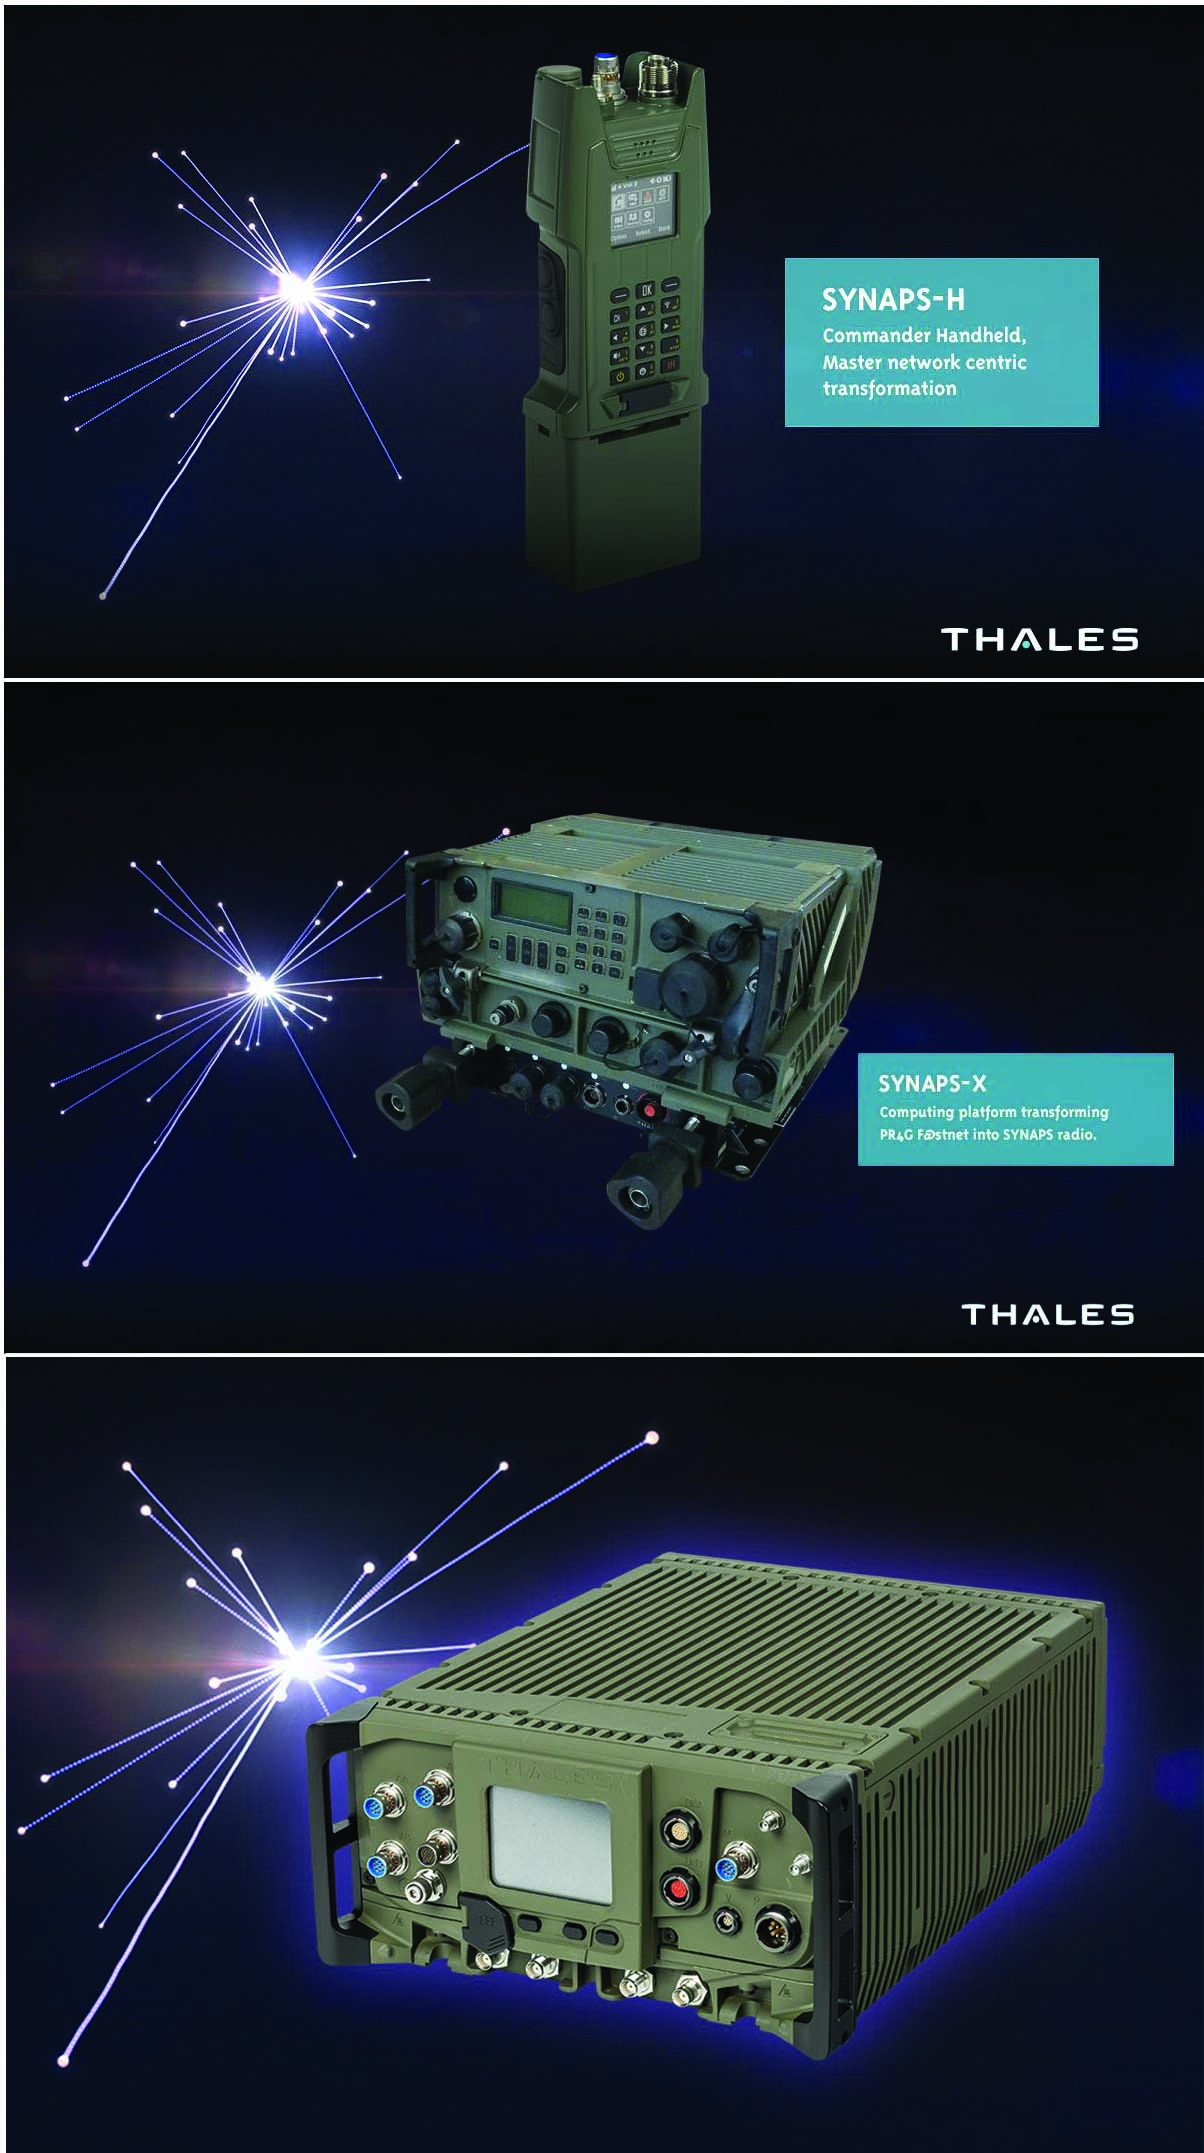 تقوم Thales بتطوير عائلة الراديو المعرف برمجياً الثنائي القناة Synaps لتلبية متطلبات الجيش الفرنسي في إطار برنامج Contact